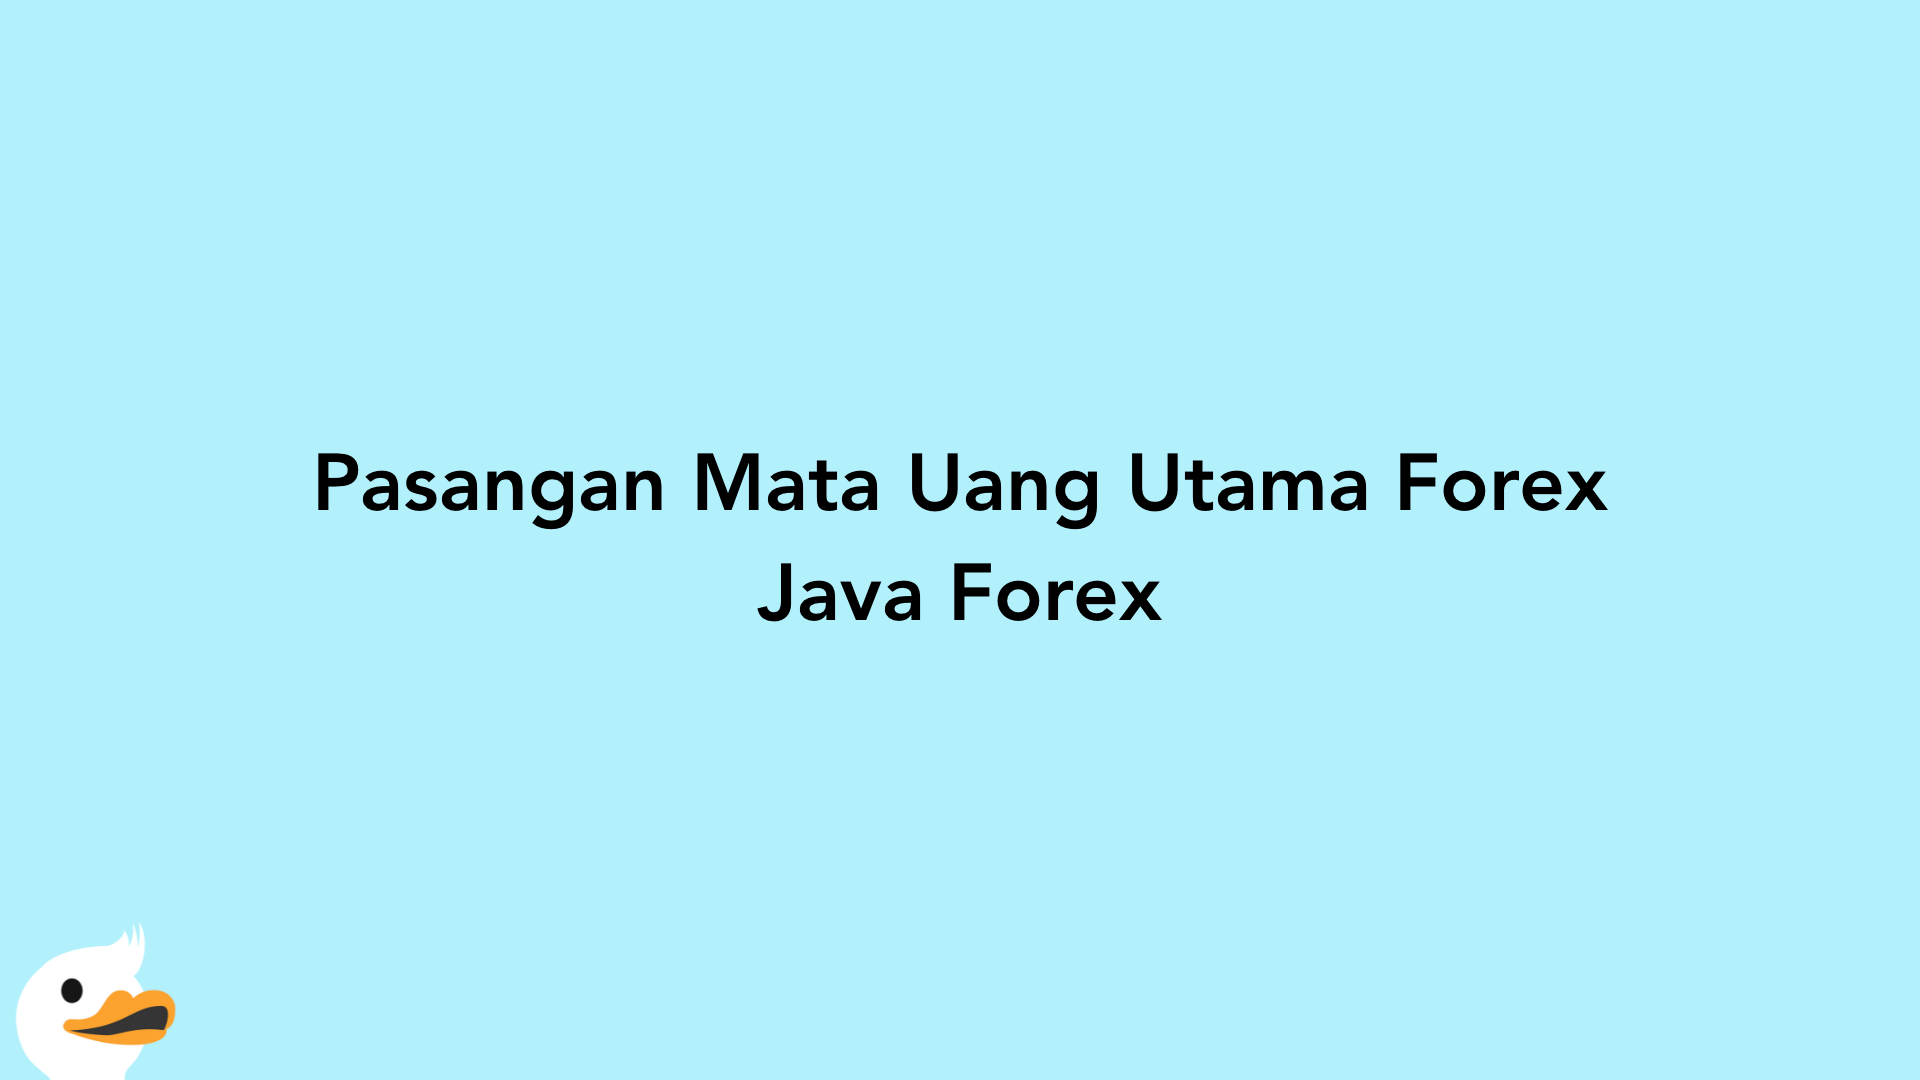 Pasangan Mata Uang Utama Forex Java Forex